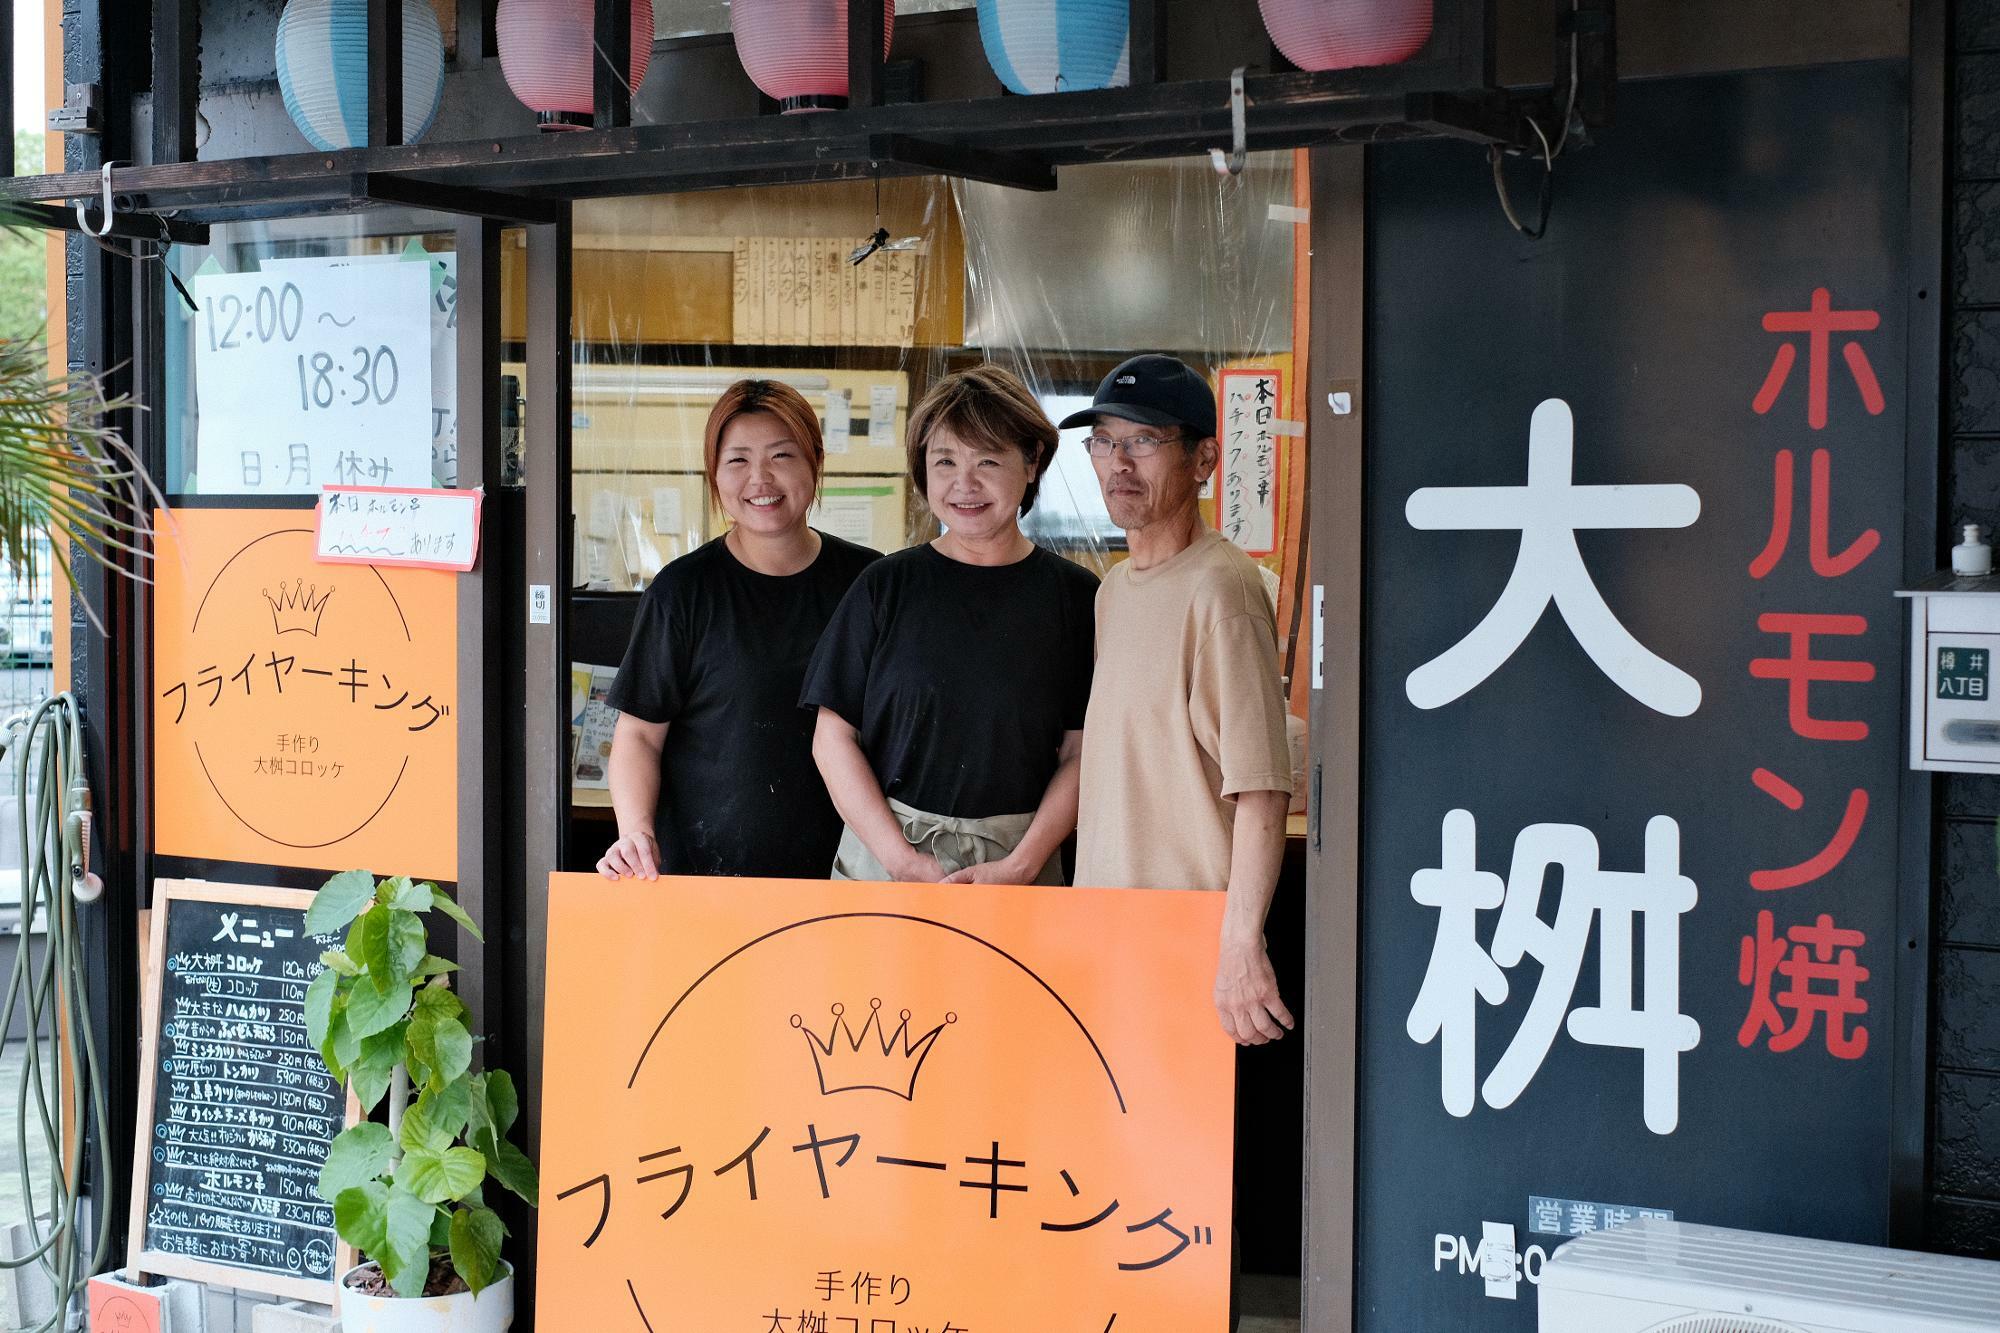 写真左から、中谷 紗千乃さん、日高 美穂さん、日高 裕治さん